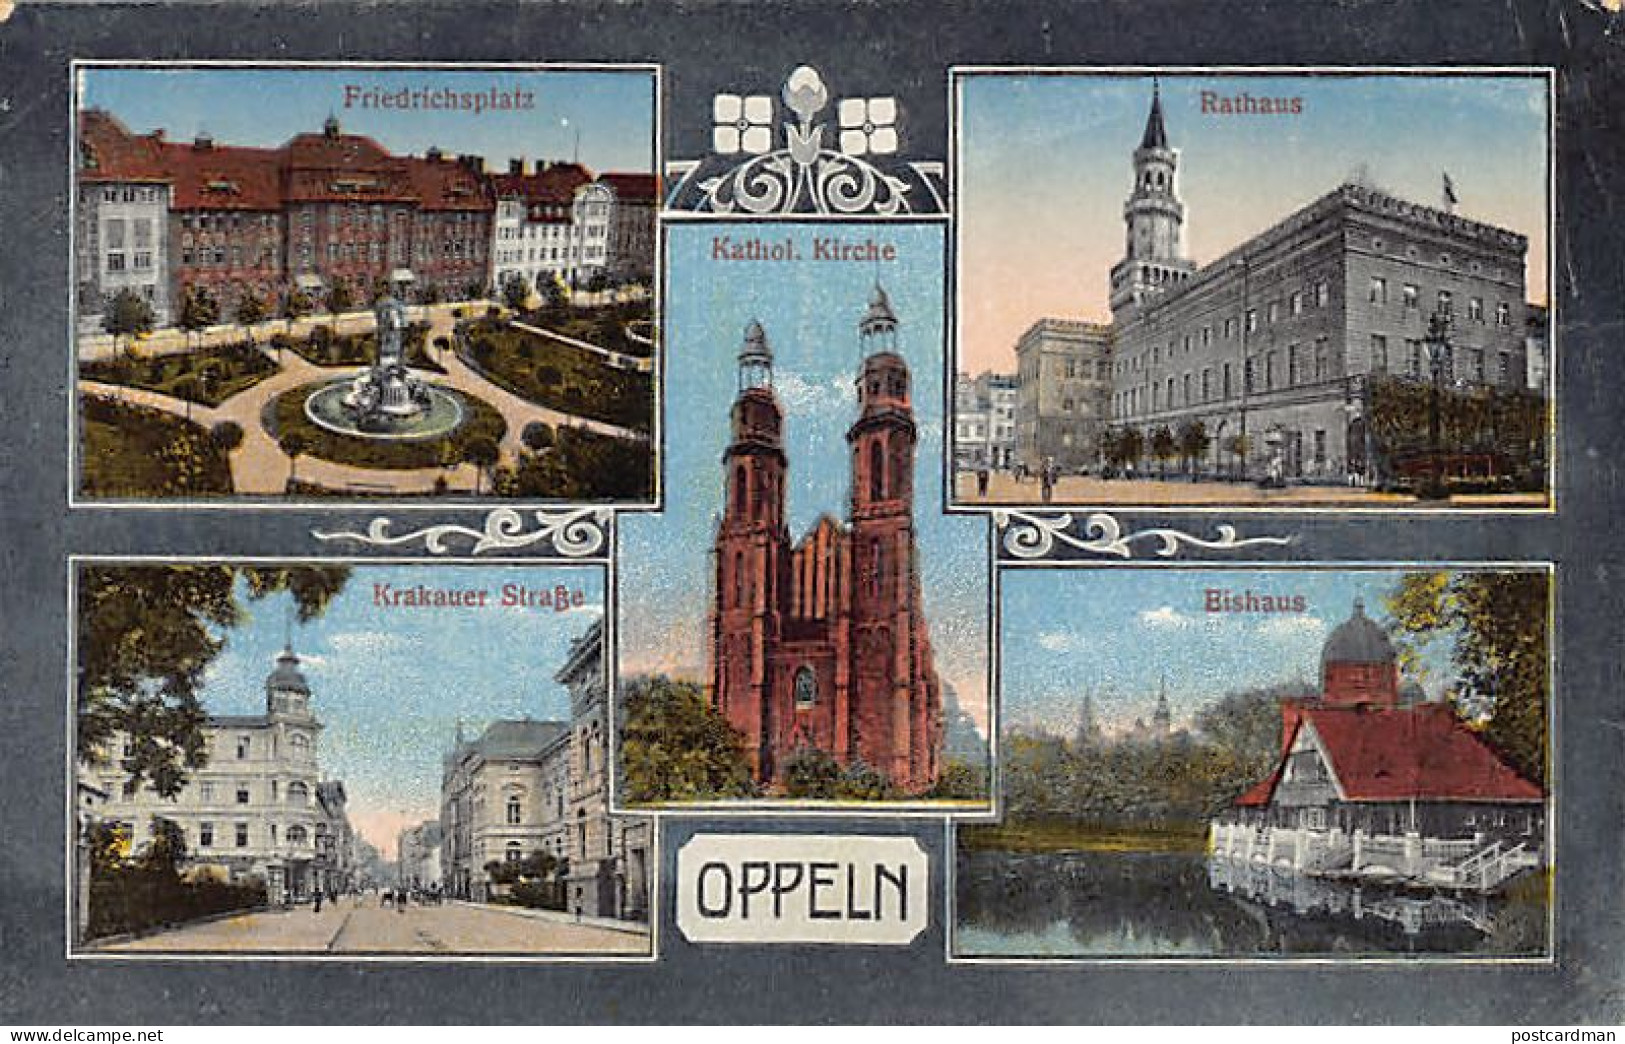 Poland - OPOLE Oppeln - Krakauer Strasse - Rathaus - Kathol. Kirche - Friedrichsplatz - Bishaus  - Poland